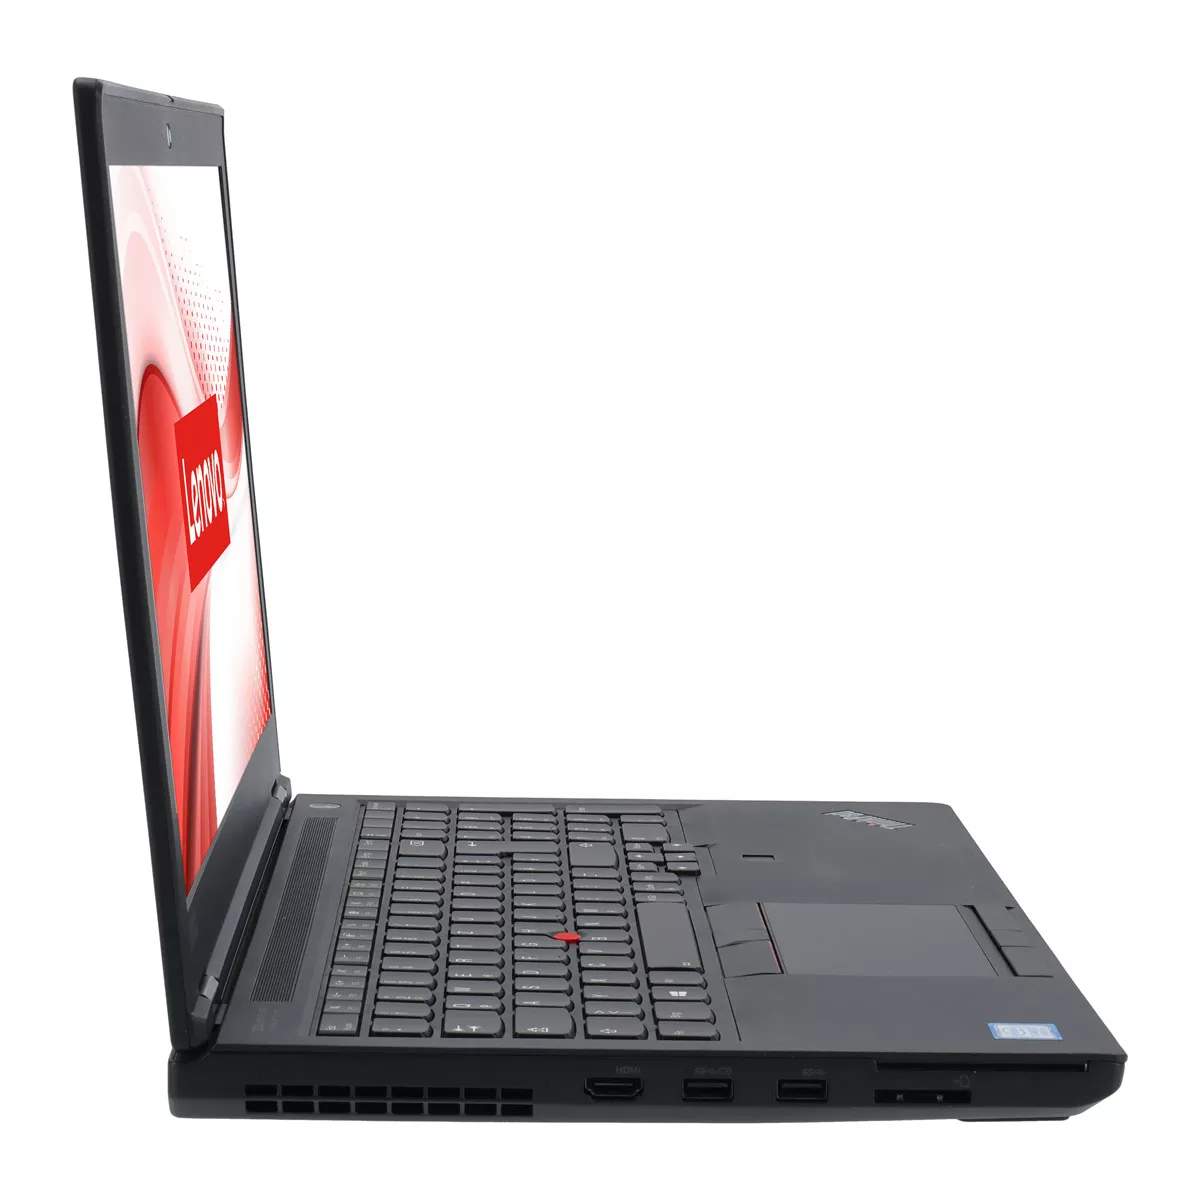 Lenovo ThinkPad P53 Core i7 9850H nVidia Quadro T2000M 32 GB 500 GB M.2 nVME SSD Webcam A